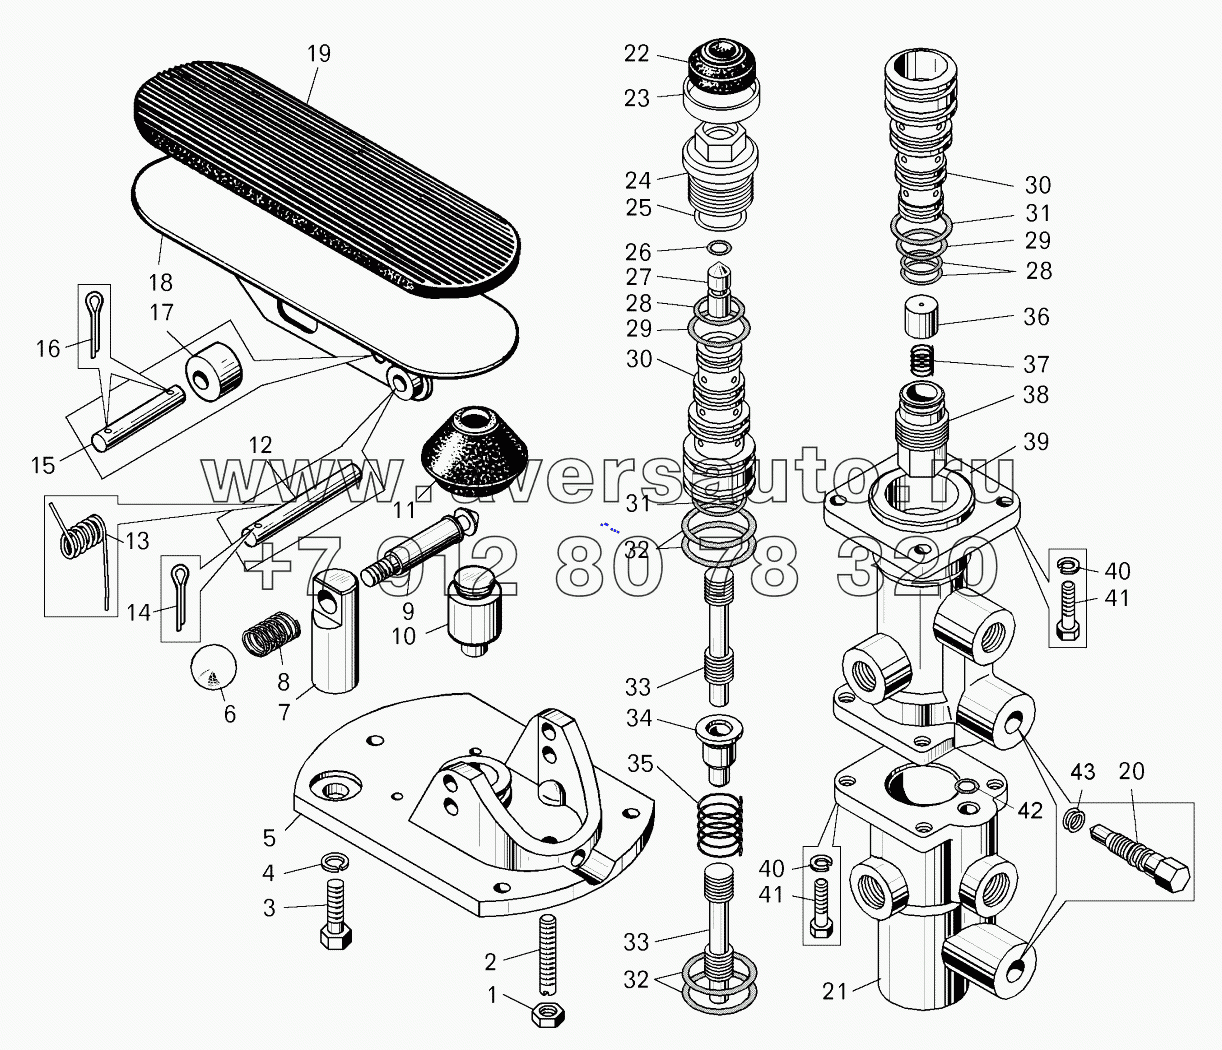  Кран управления тормозами (7555А-3514010-01);Control brake valve